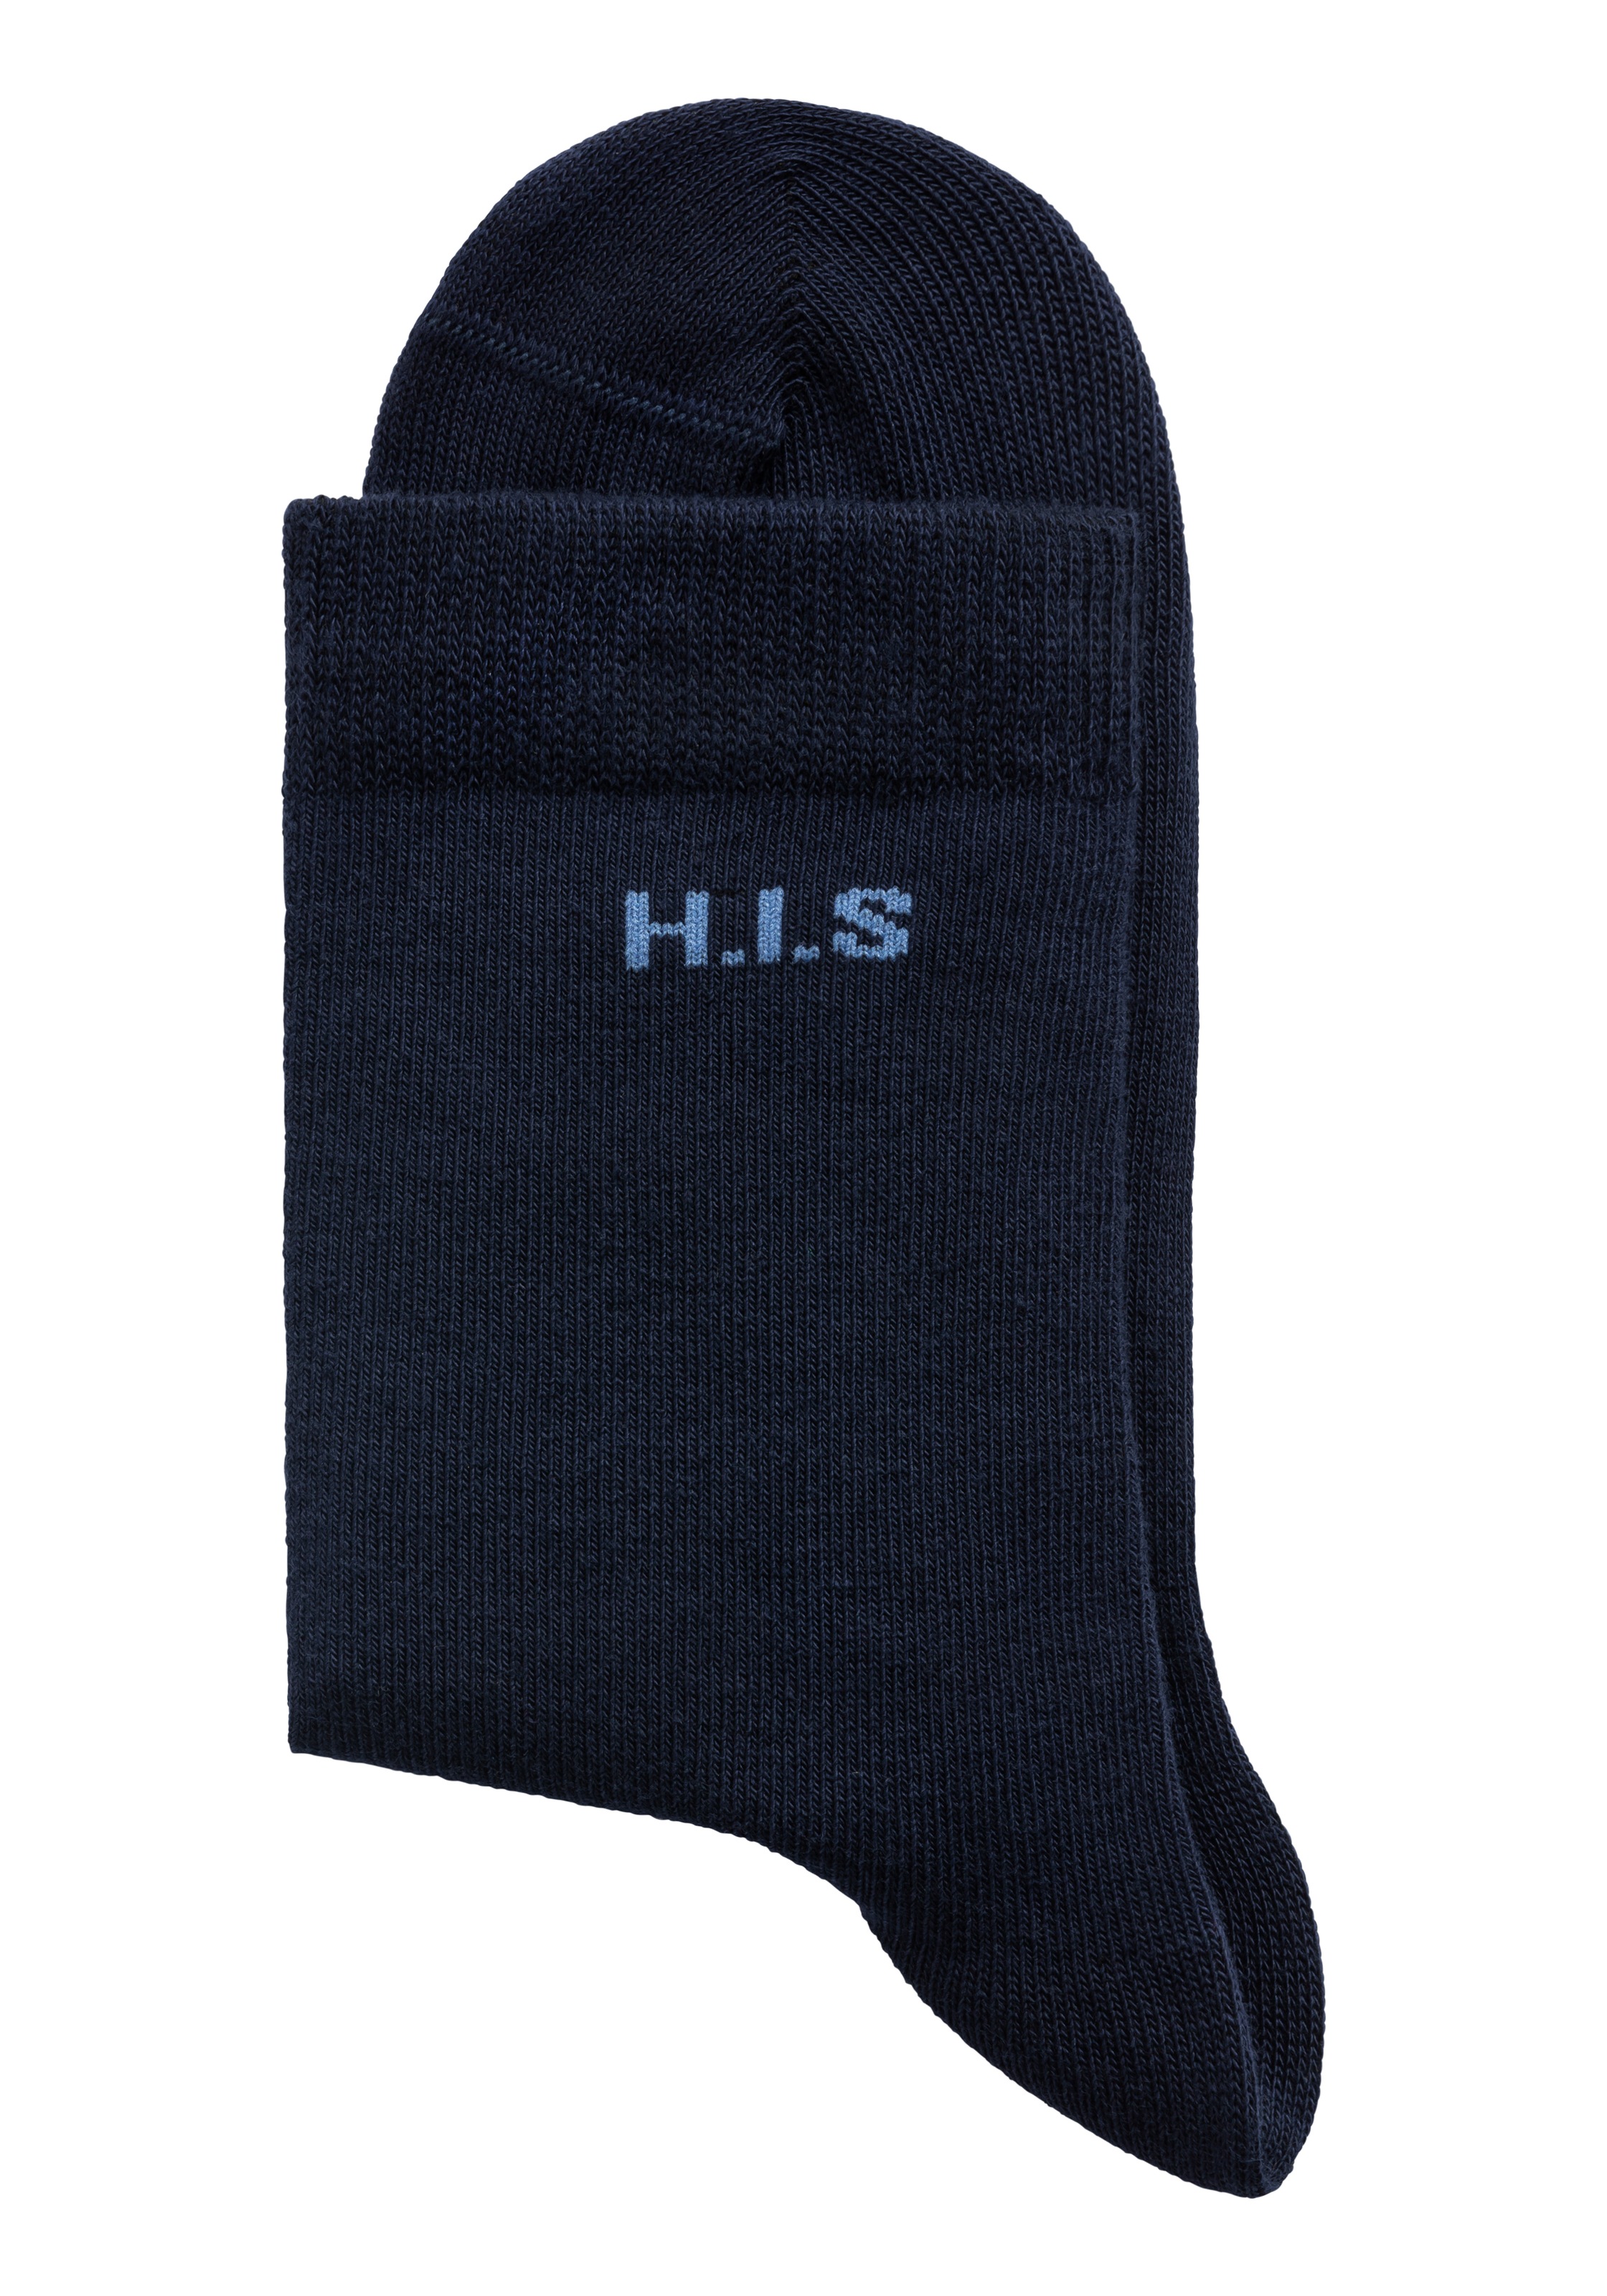 H.I.S Socken, (Packung, 16 Paar), mit eingestricktem Markenlogo